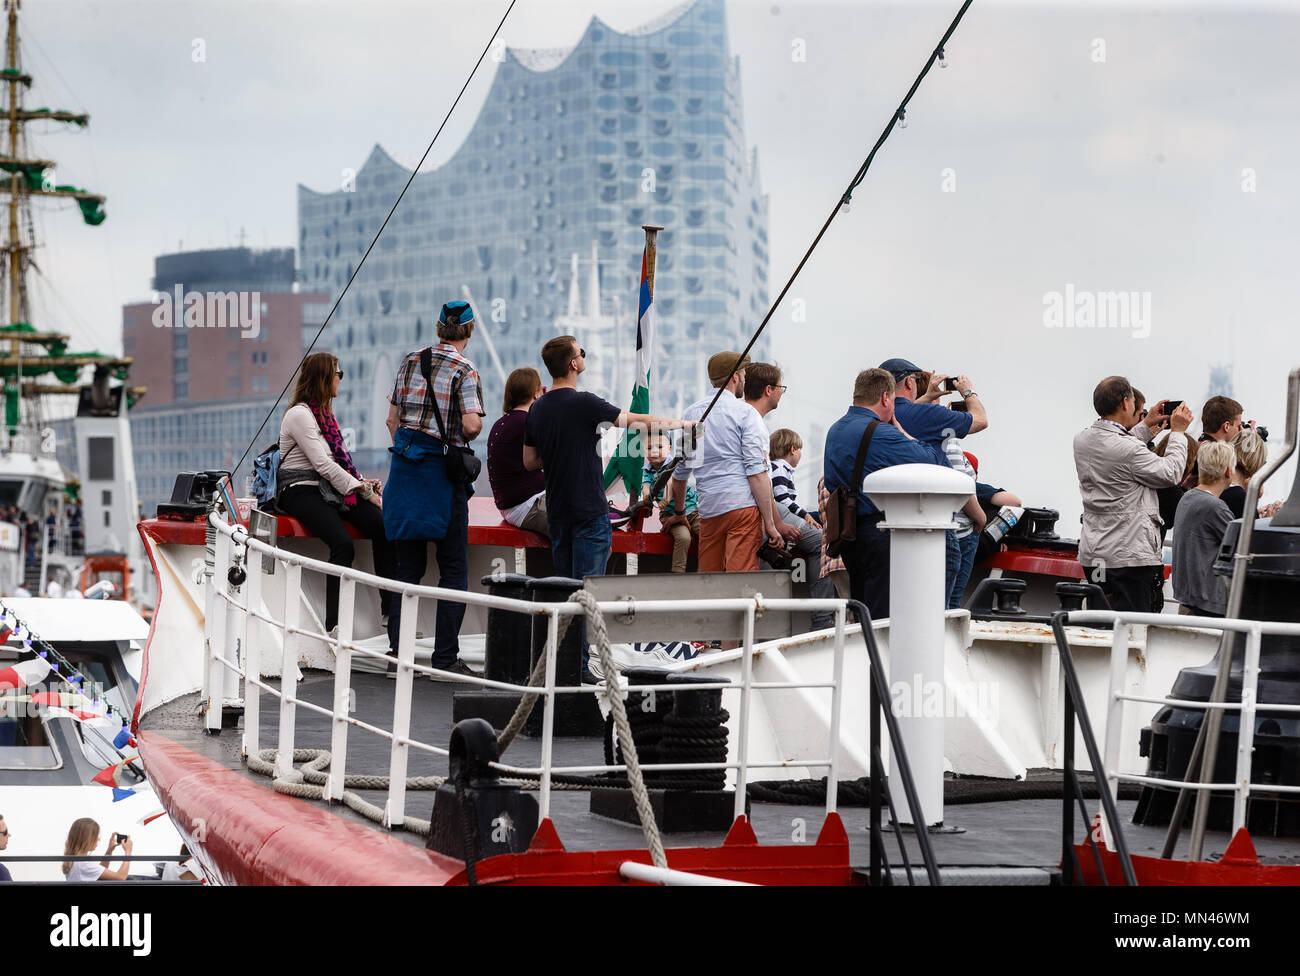 11 maggio 2018, Germania Amburgo: i visitatori del porto di Amburgo il 829th anniversario sulla poppa della lightship 'Borkumriff' prima del Elbphilharmonie il giorno della nave aperto. Il festival durerà fino al 13 maggio 2018. Foto: Markus Scholz/dpa Foto Stock